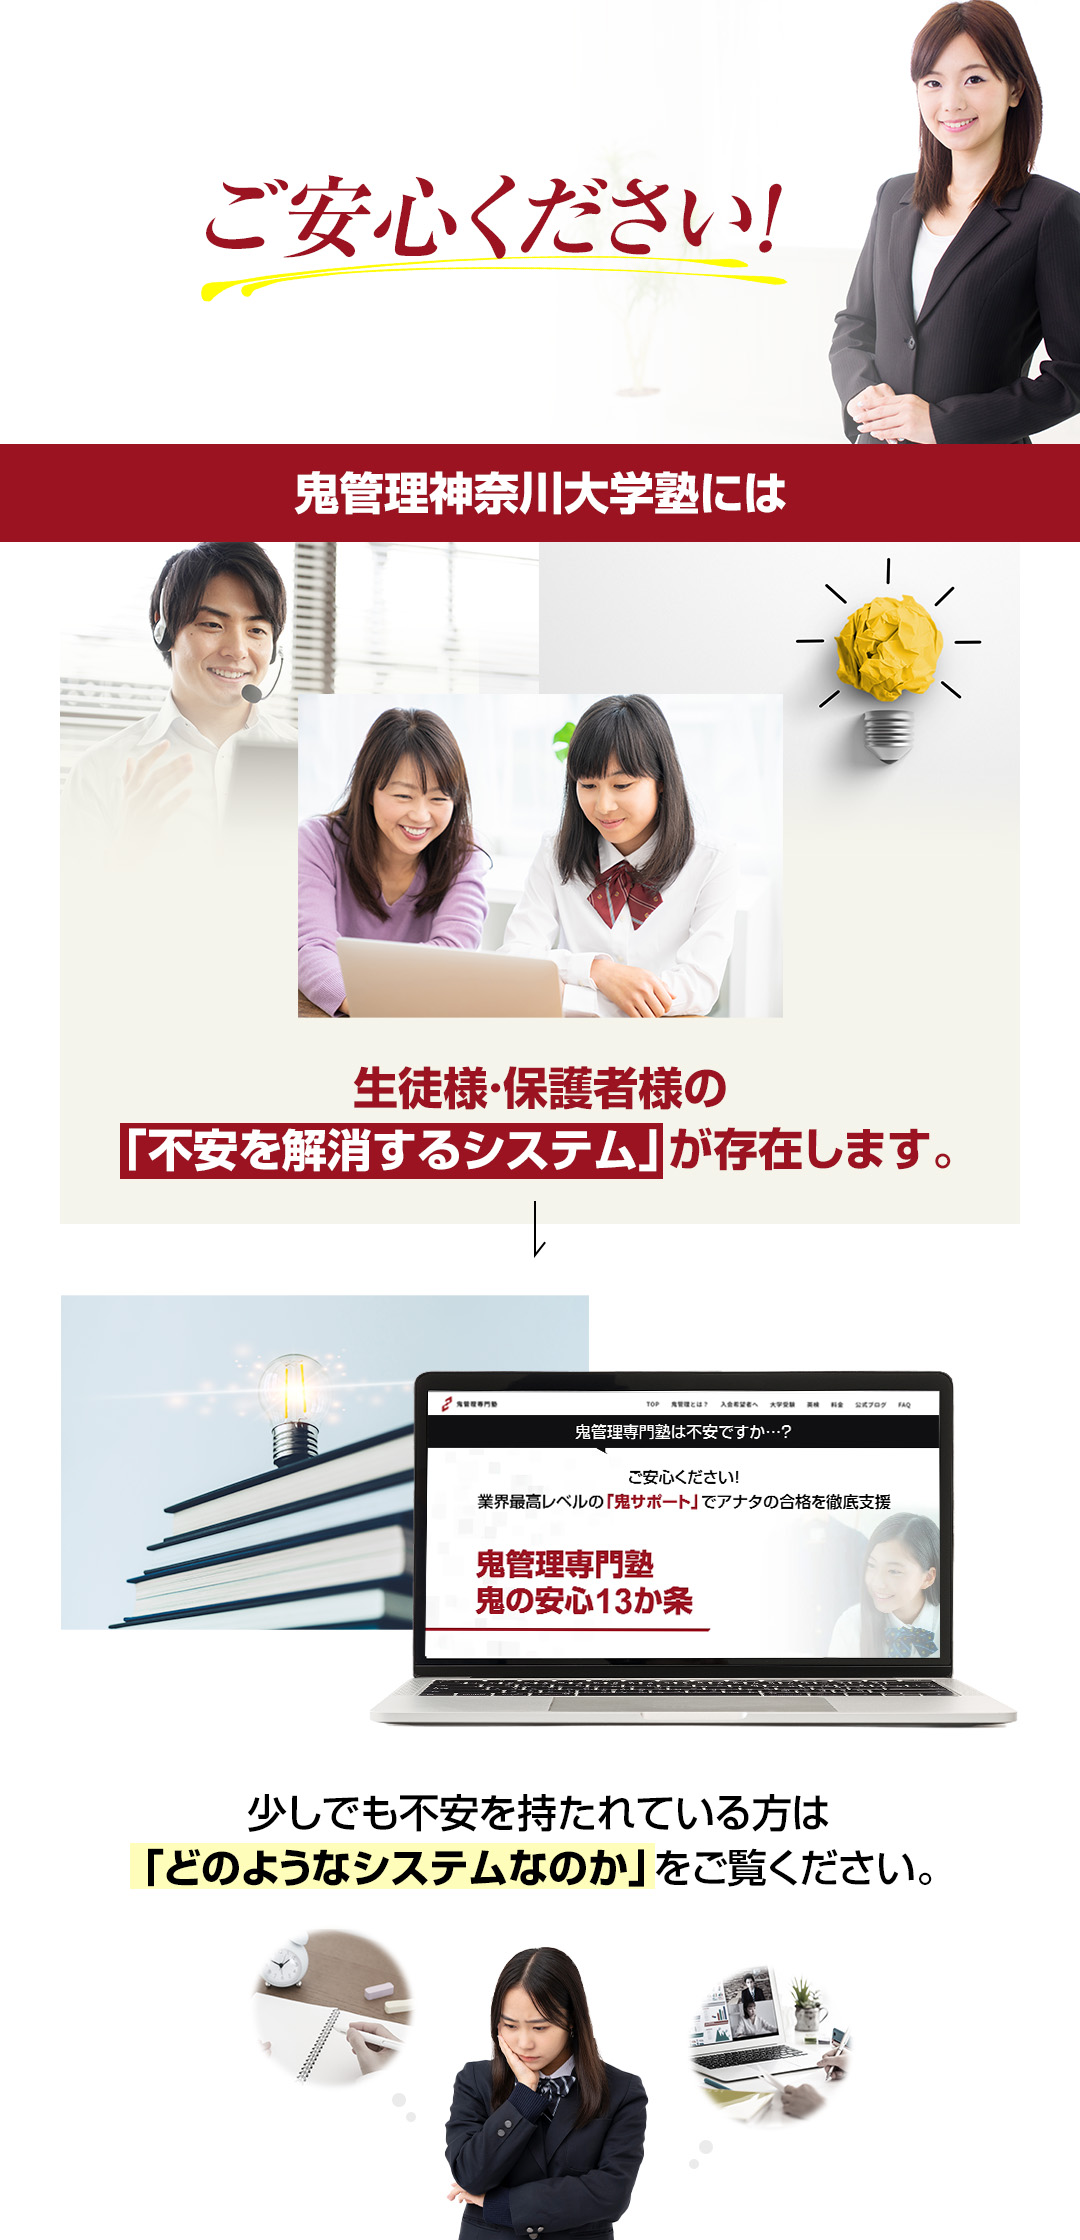 鬼管理神奈川大学塾には生徒様・保護者様の「不安を解消するシステム」が存在します